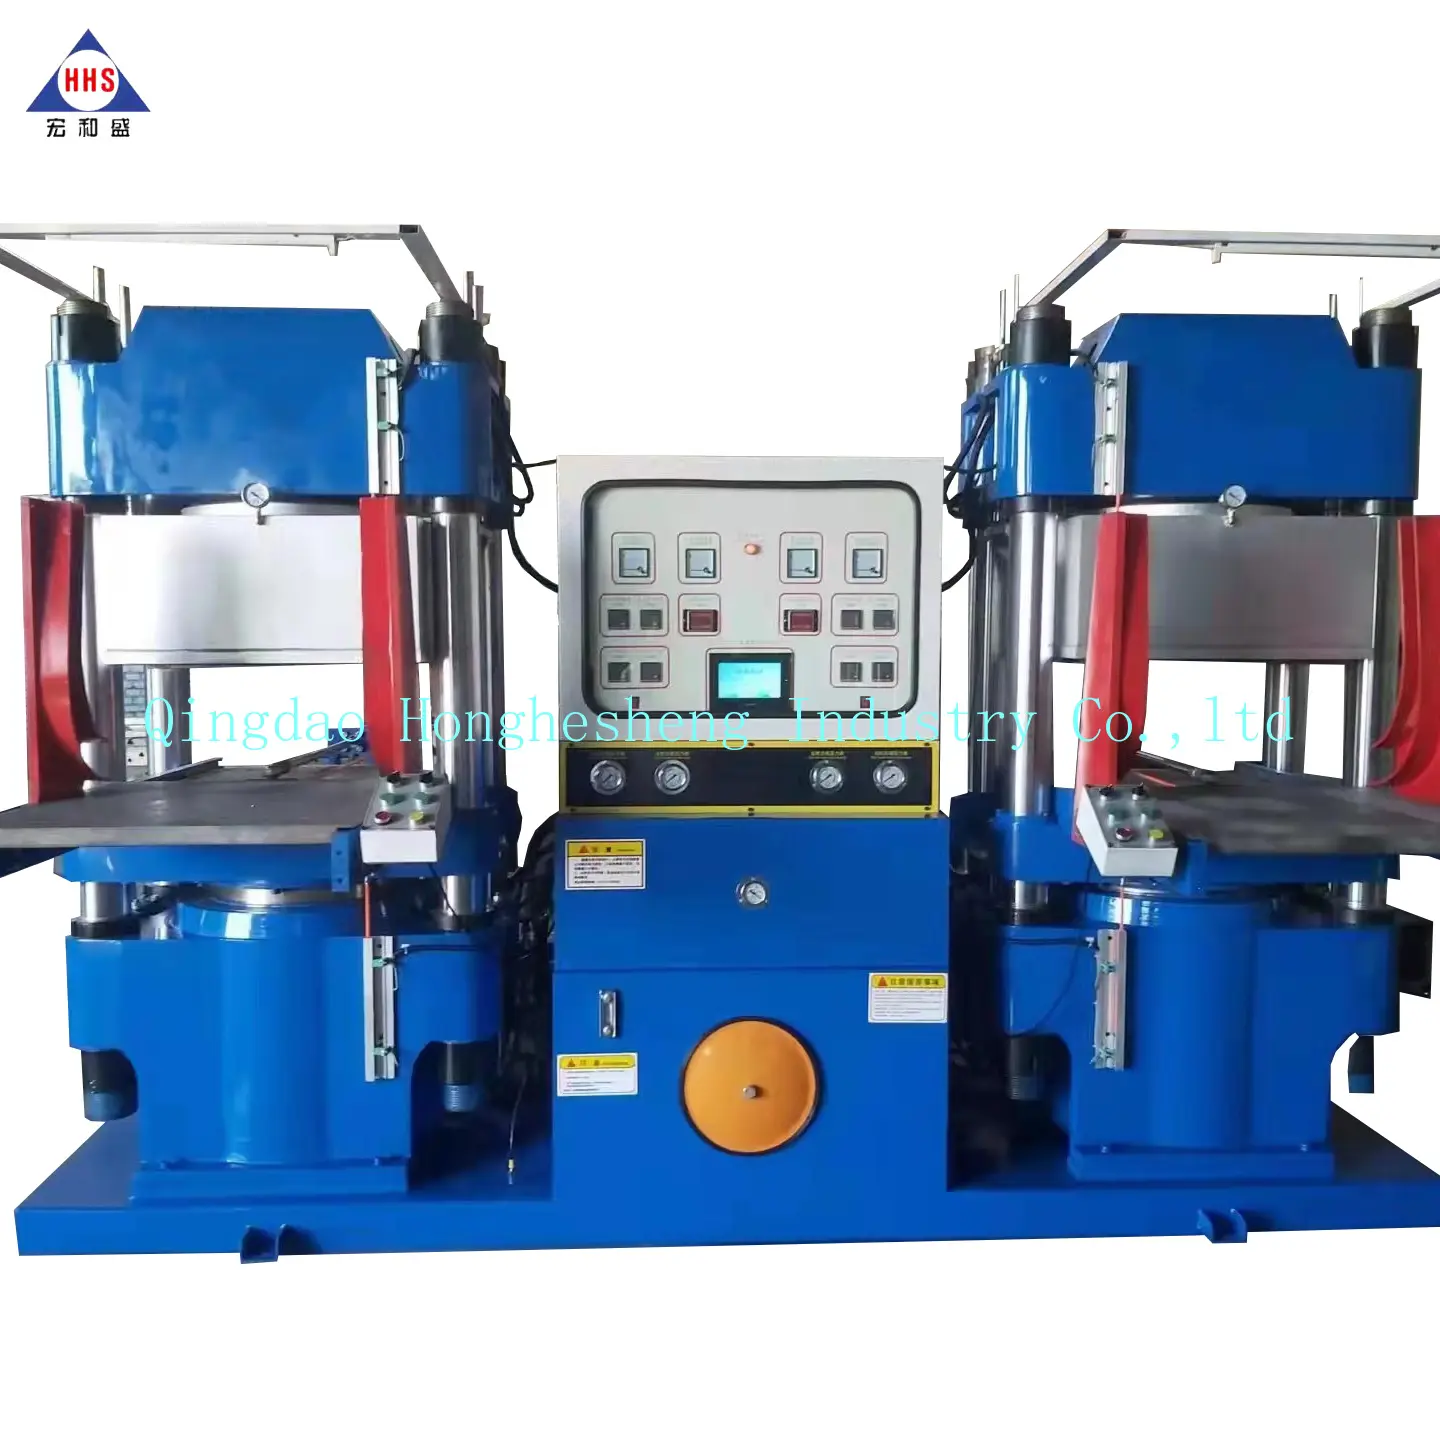 Machine de presse à chaud de bonne qualité avec couvercle sous vide pour la fabrication de joint d'étanchéité en silicone pour autocuiseur/récipient